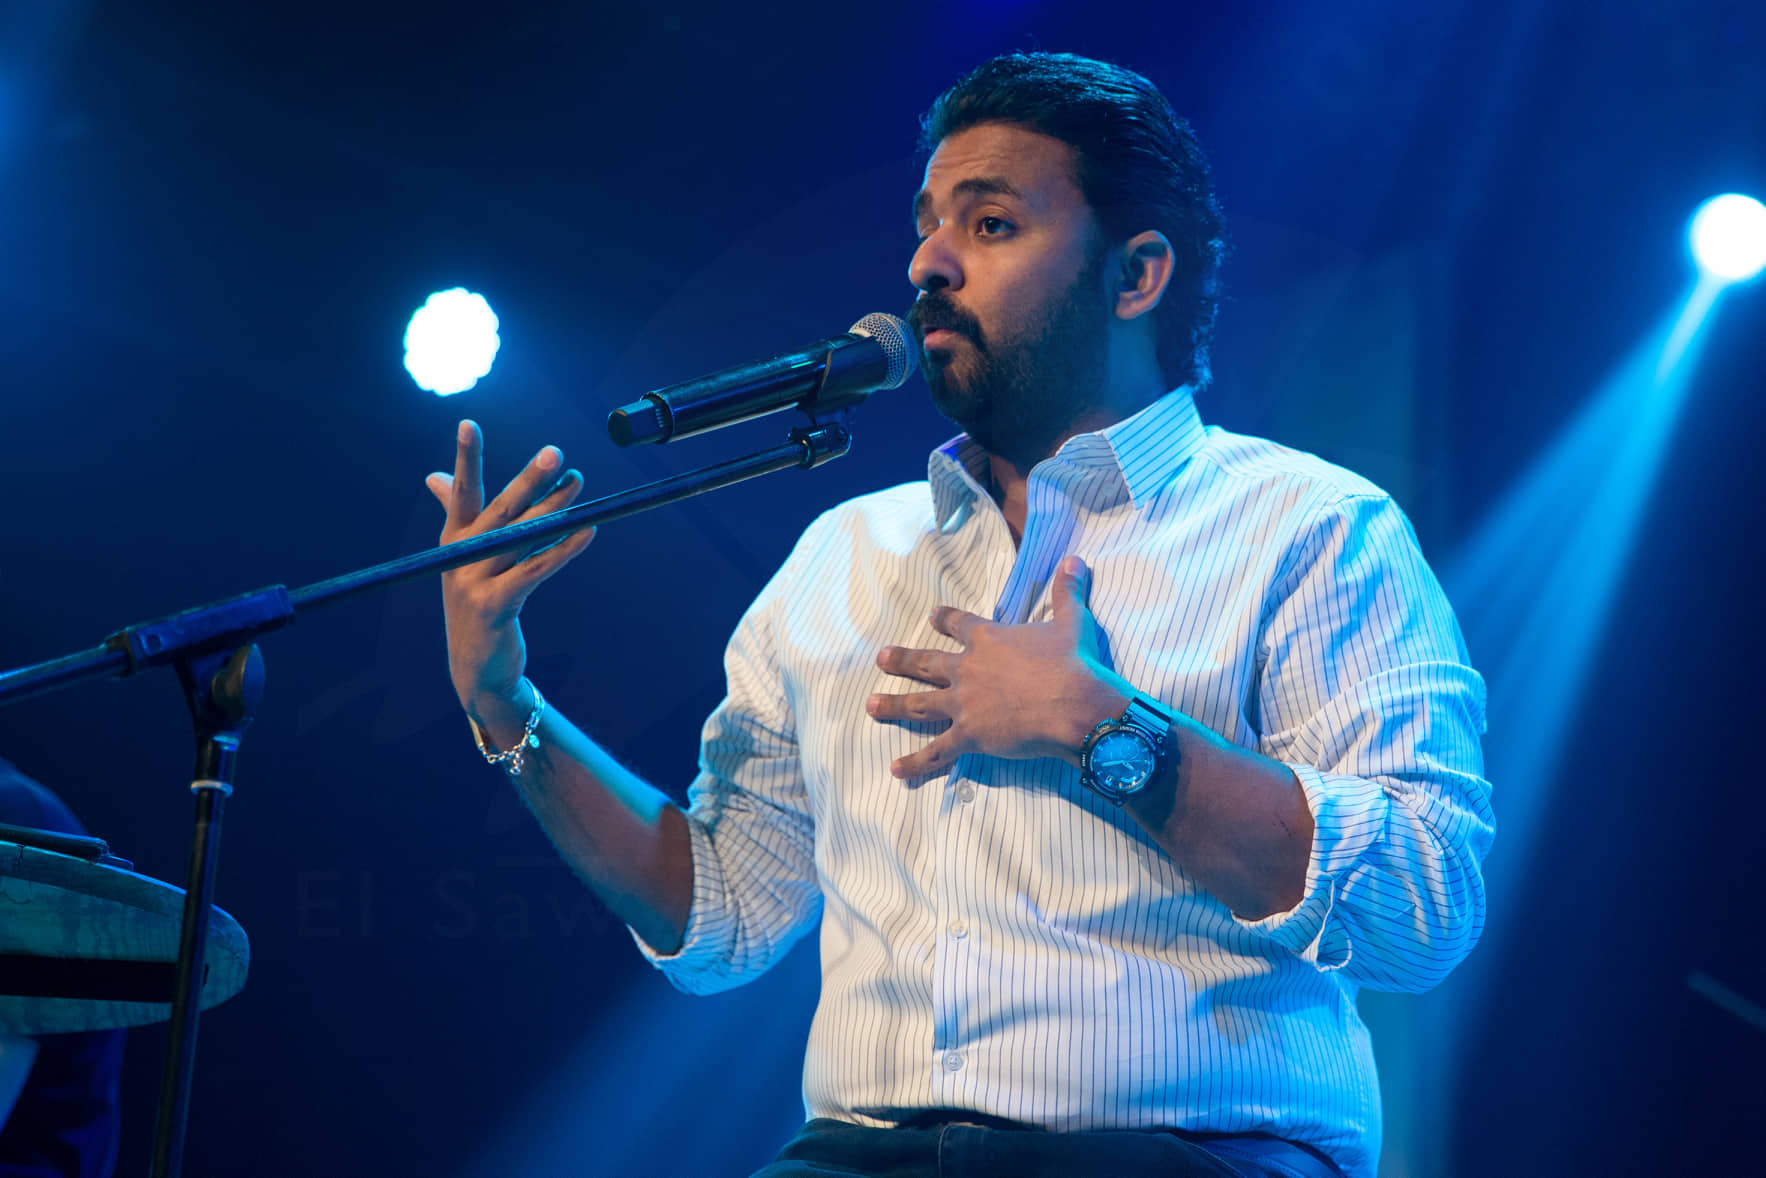  الشاعر عمرو حسن في حفل ساقية عبدالمنعم الصاوى